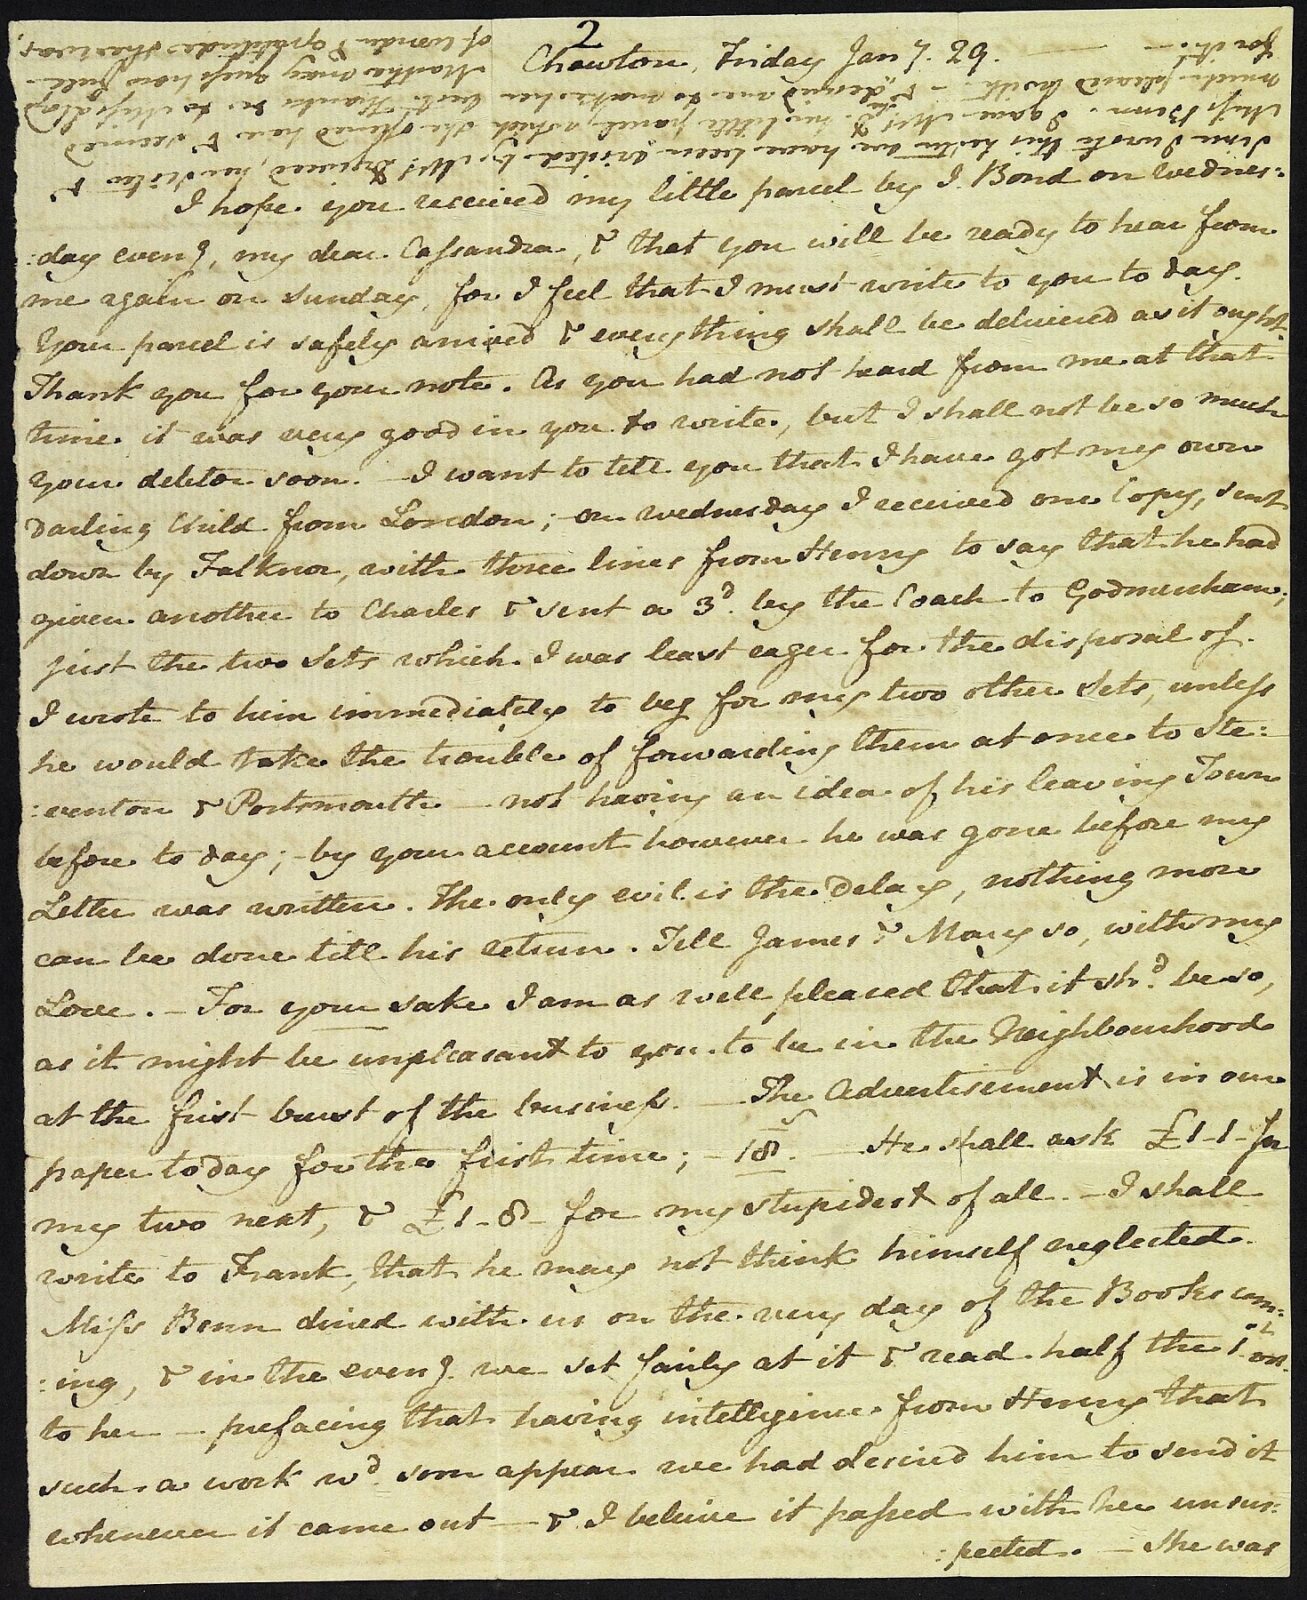 Letter from Jane Austen to Cassandra Austen, 29 January 1813